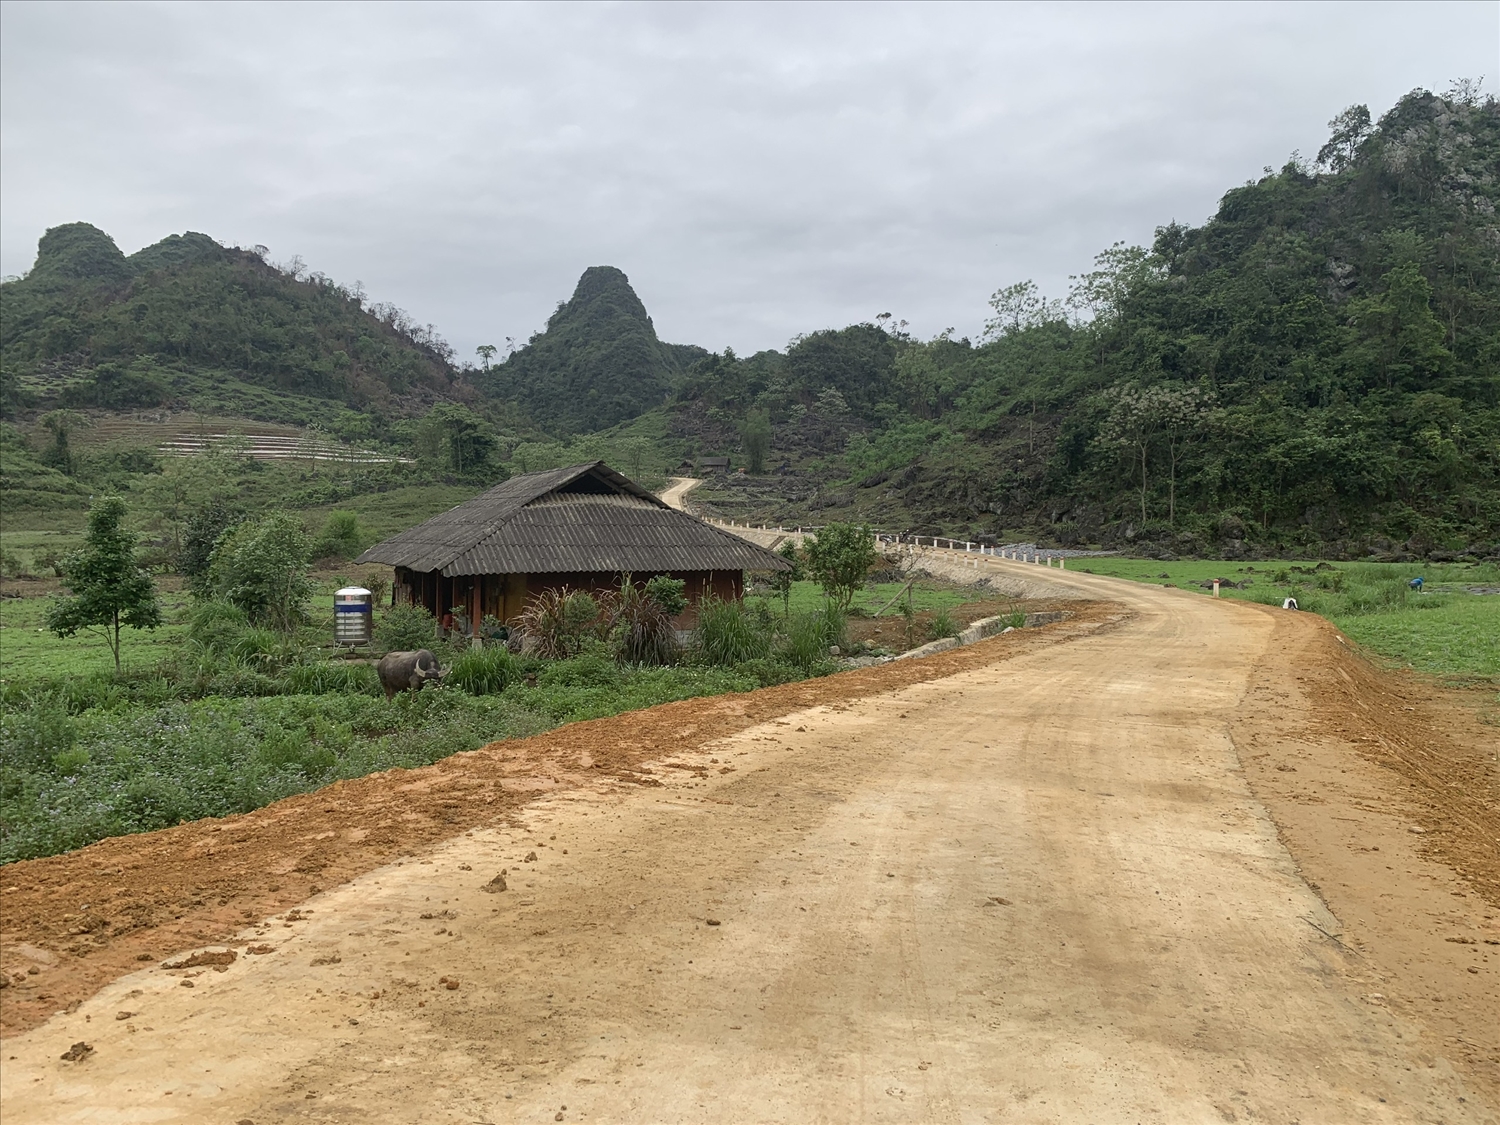 Con đường mới rộng thênh thang, mở hướng phát triển cho vùng đồng bào DTTS và miền núi huyện Đồng Hỷ